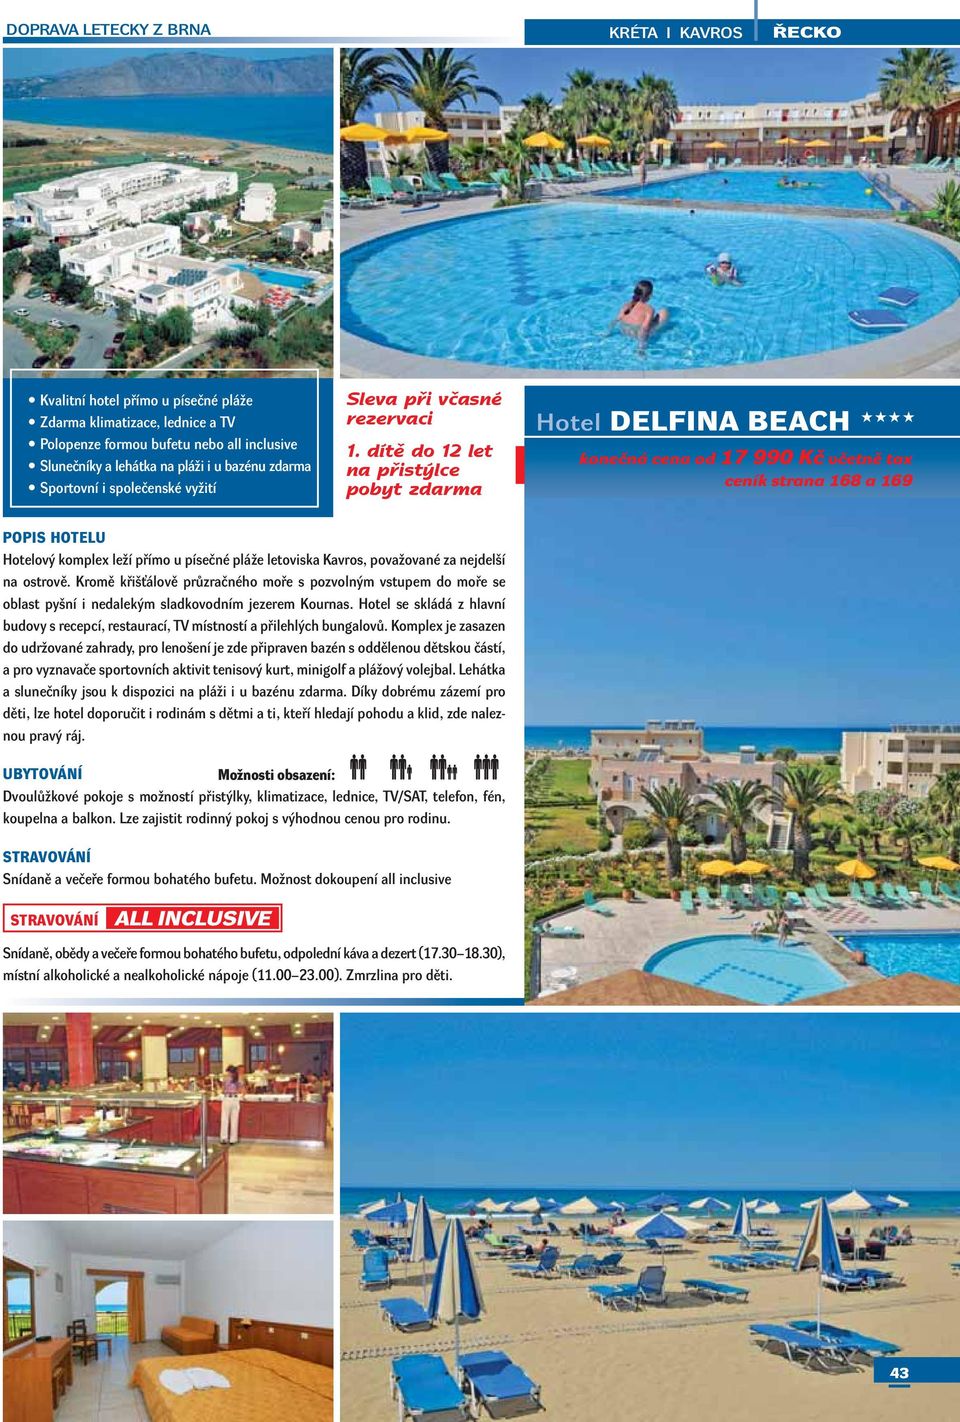 dítě do 12 let Hotel DELFINA BEACH konečná cena od 17 990 Kč včetně tax ceník strana 168 a 169 Hotelový komplex leží přímo u písečné pláže letoviska Kavros, považované za nejdelší na ostrově.